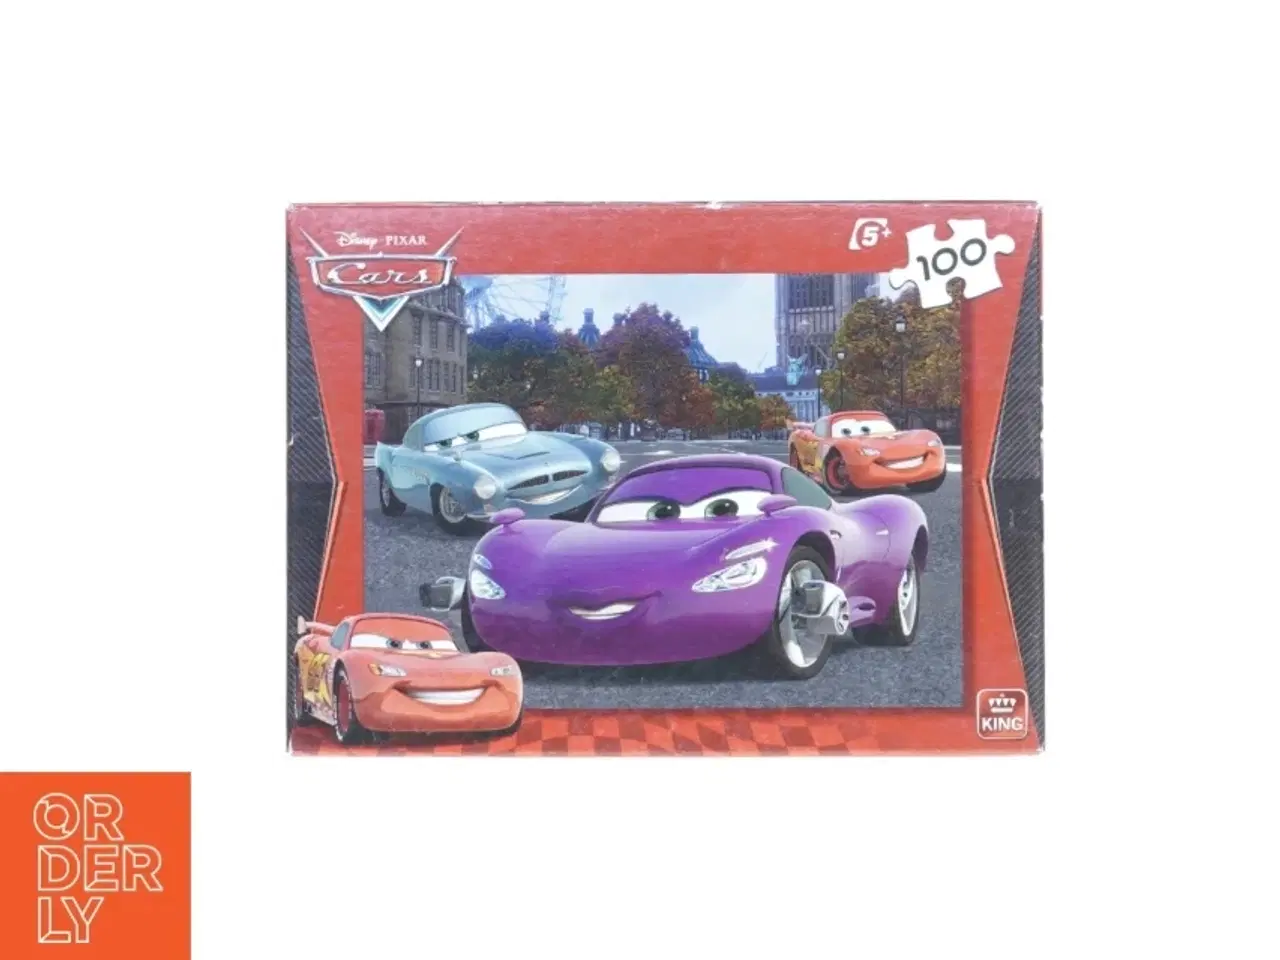 Billede 2 - Puslespil med Cars motiv fra Disney